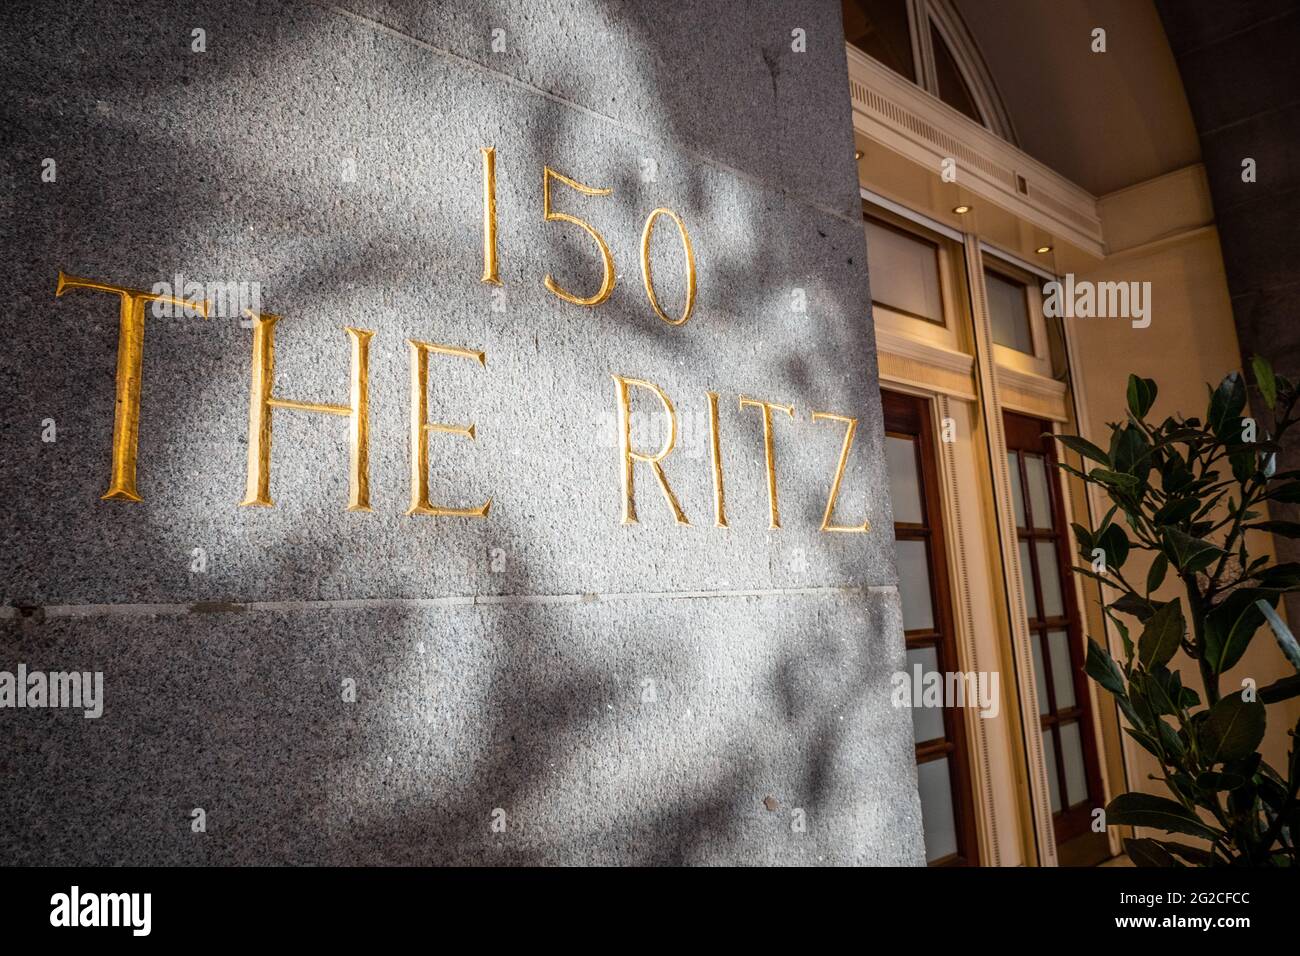 150 The Ritz, Londres. El hotel de 5 estrellas de categoría II de Londres, en Piccadilly, se ha convertido en un símbolo de la alta sociedad y el lujo. Foto de stock